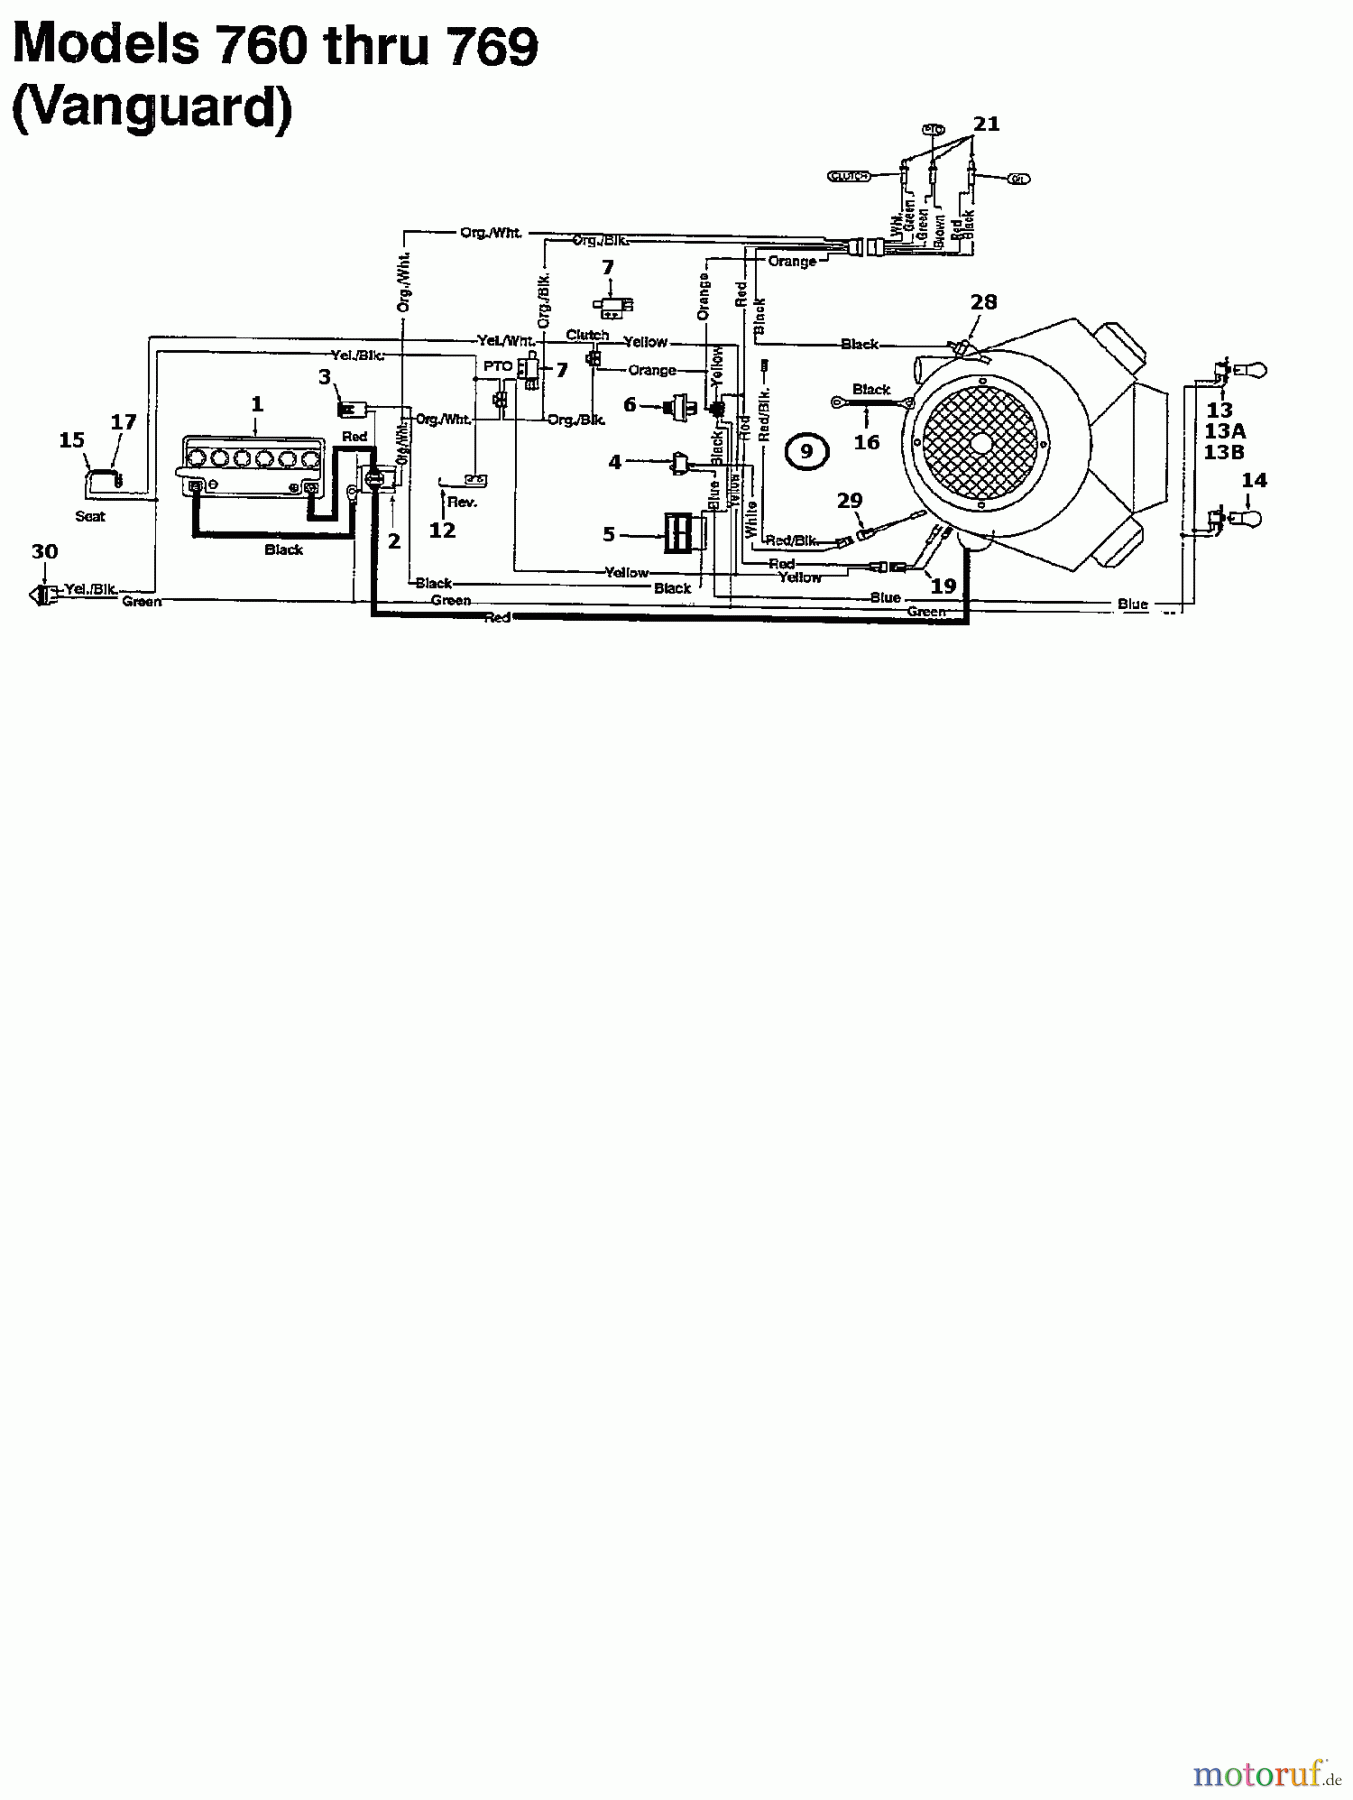  MTD Rasentraktoren 125/102 134K765N678  (1994) Schaltplan Vanguard